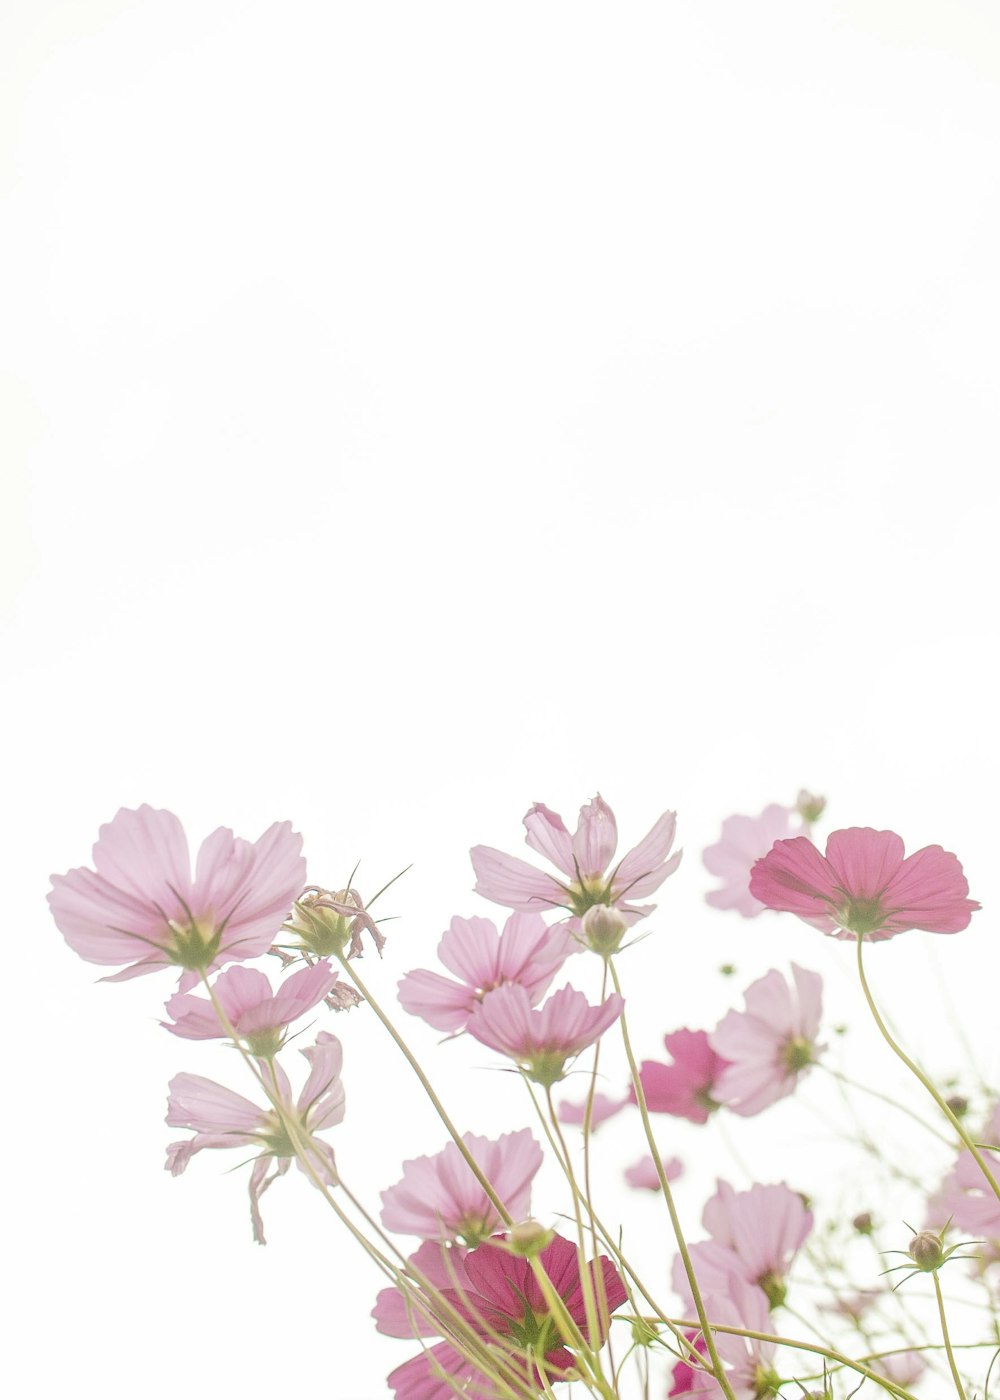 Ein Strauß rosa Blumen in einer Vase